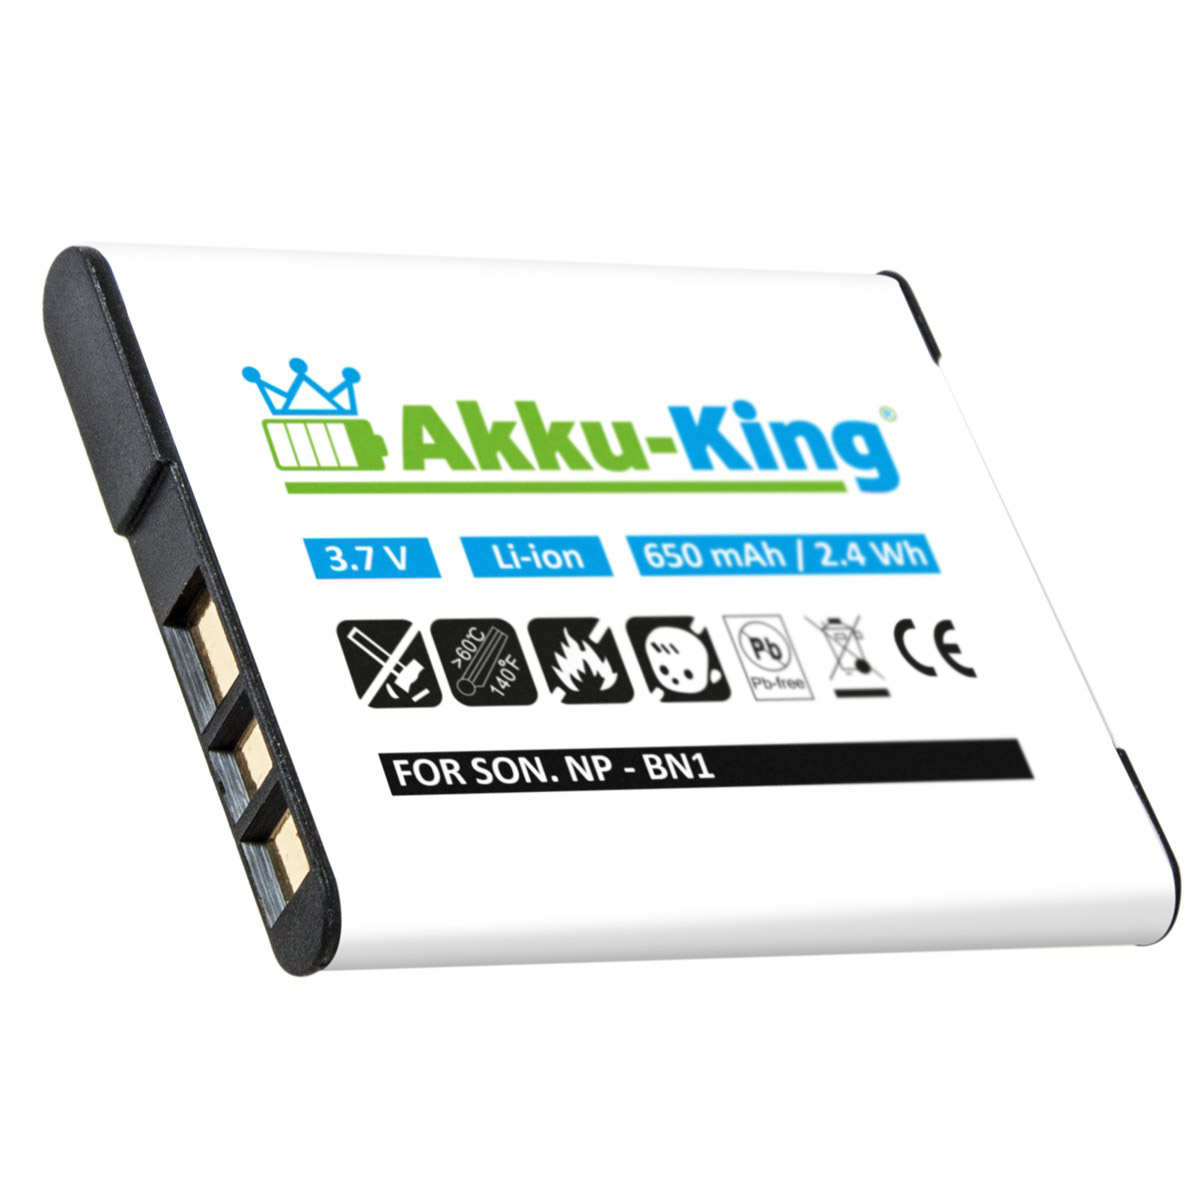 3.7 Akku Kamera-Akku, NP-BN1 kompatibel Li-Ion mit Volt, AKKU-KING Sony 650mAh